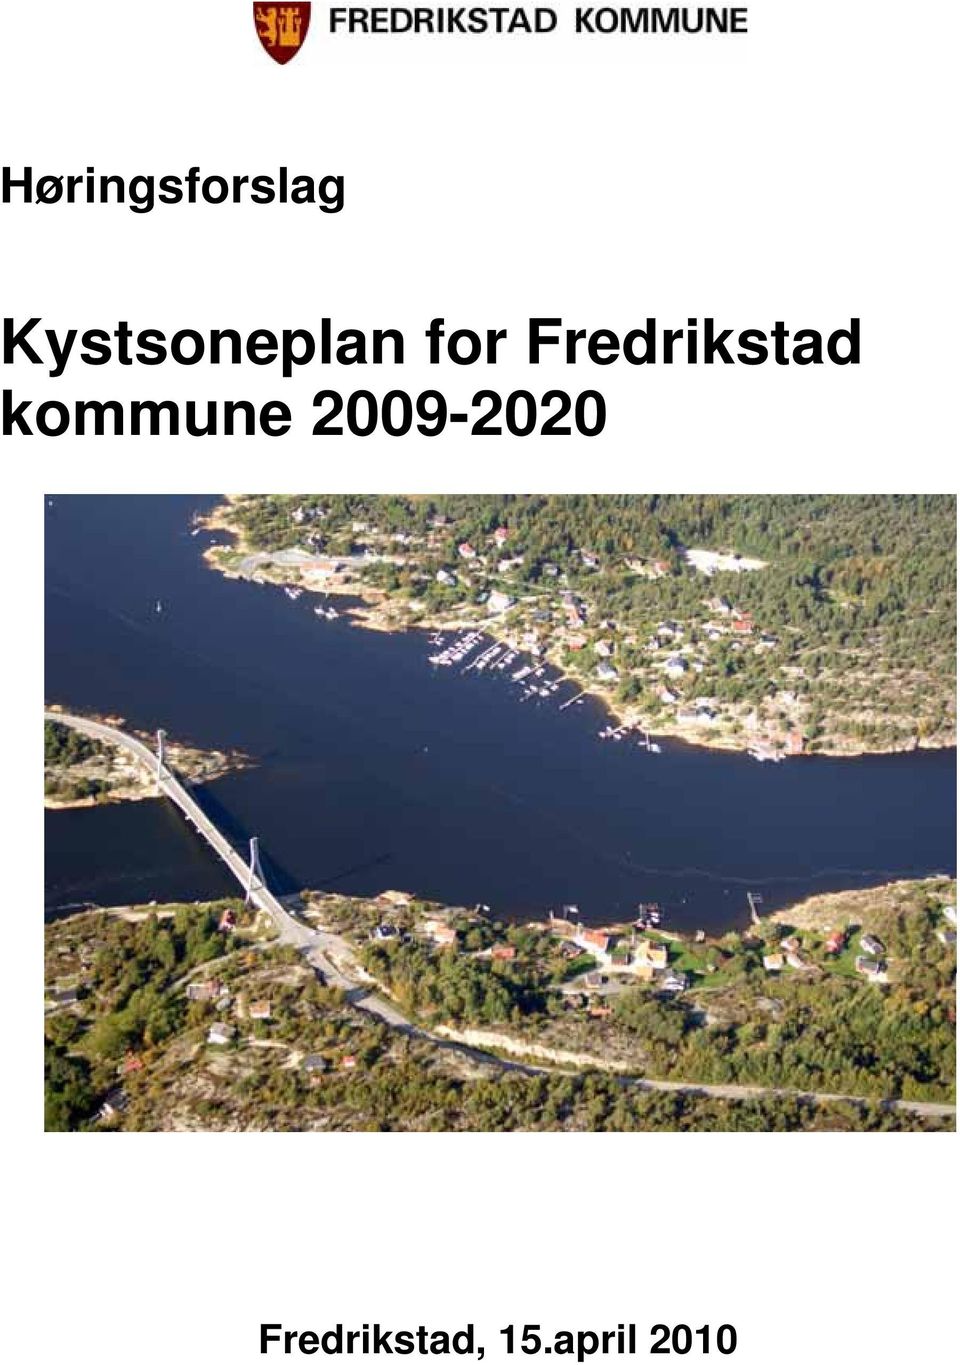 Fredrikstad kommune